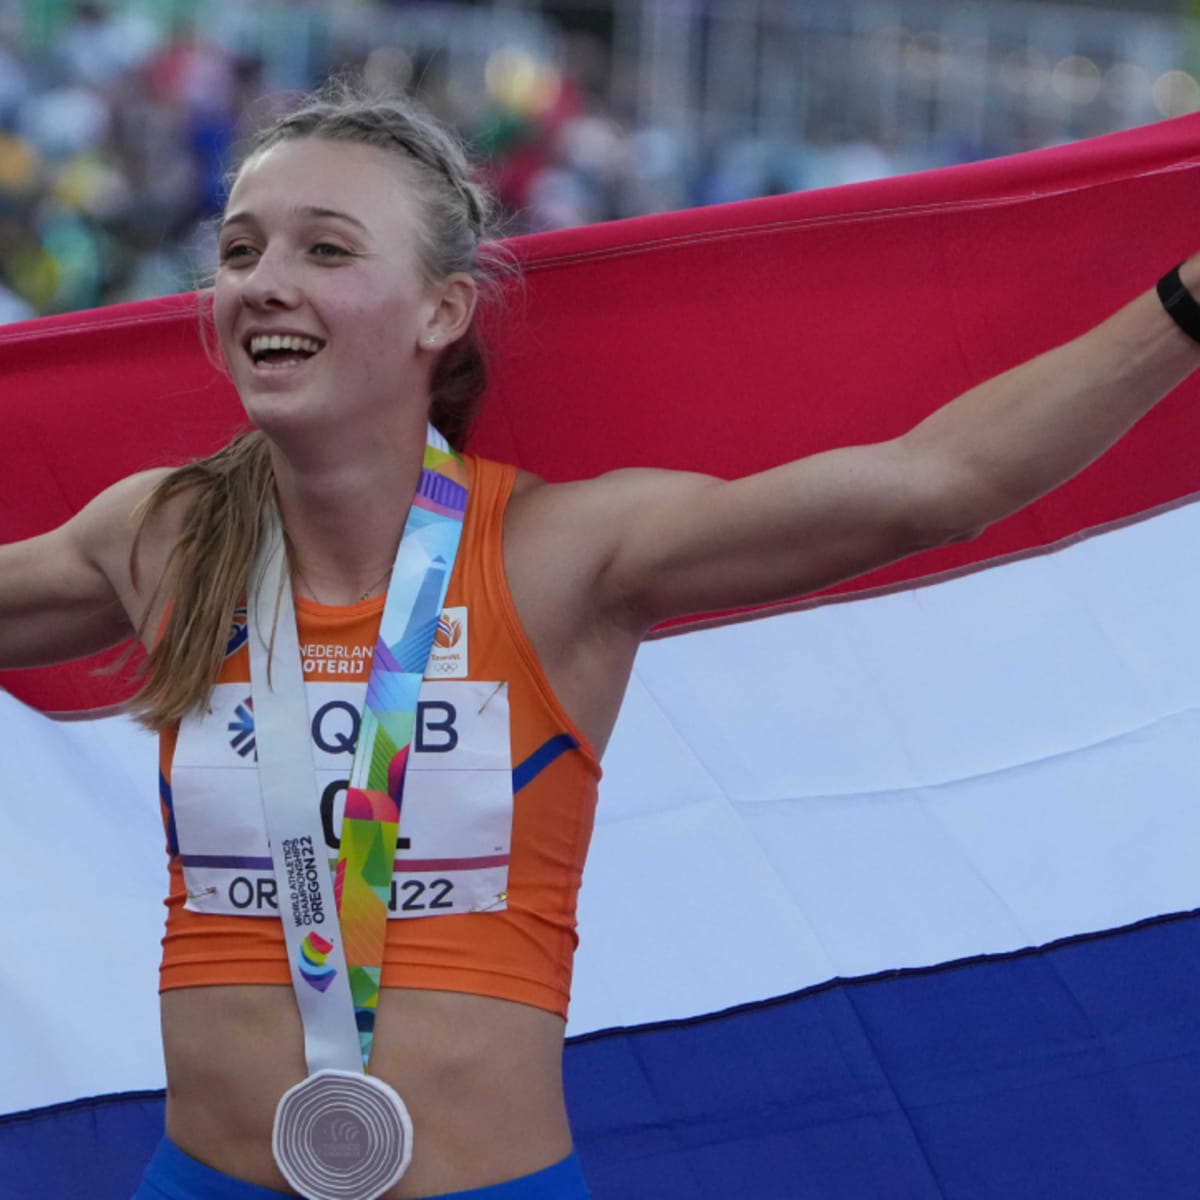 Femke Bol - Dutch Runner/Hurdler : r/HottestFemaleAthletes